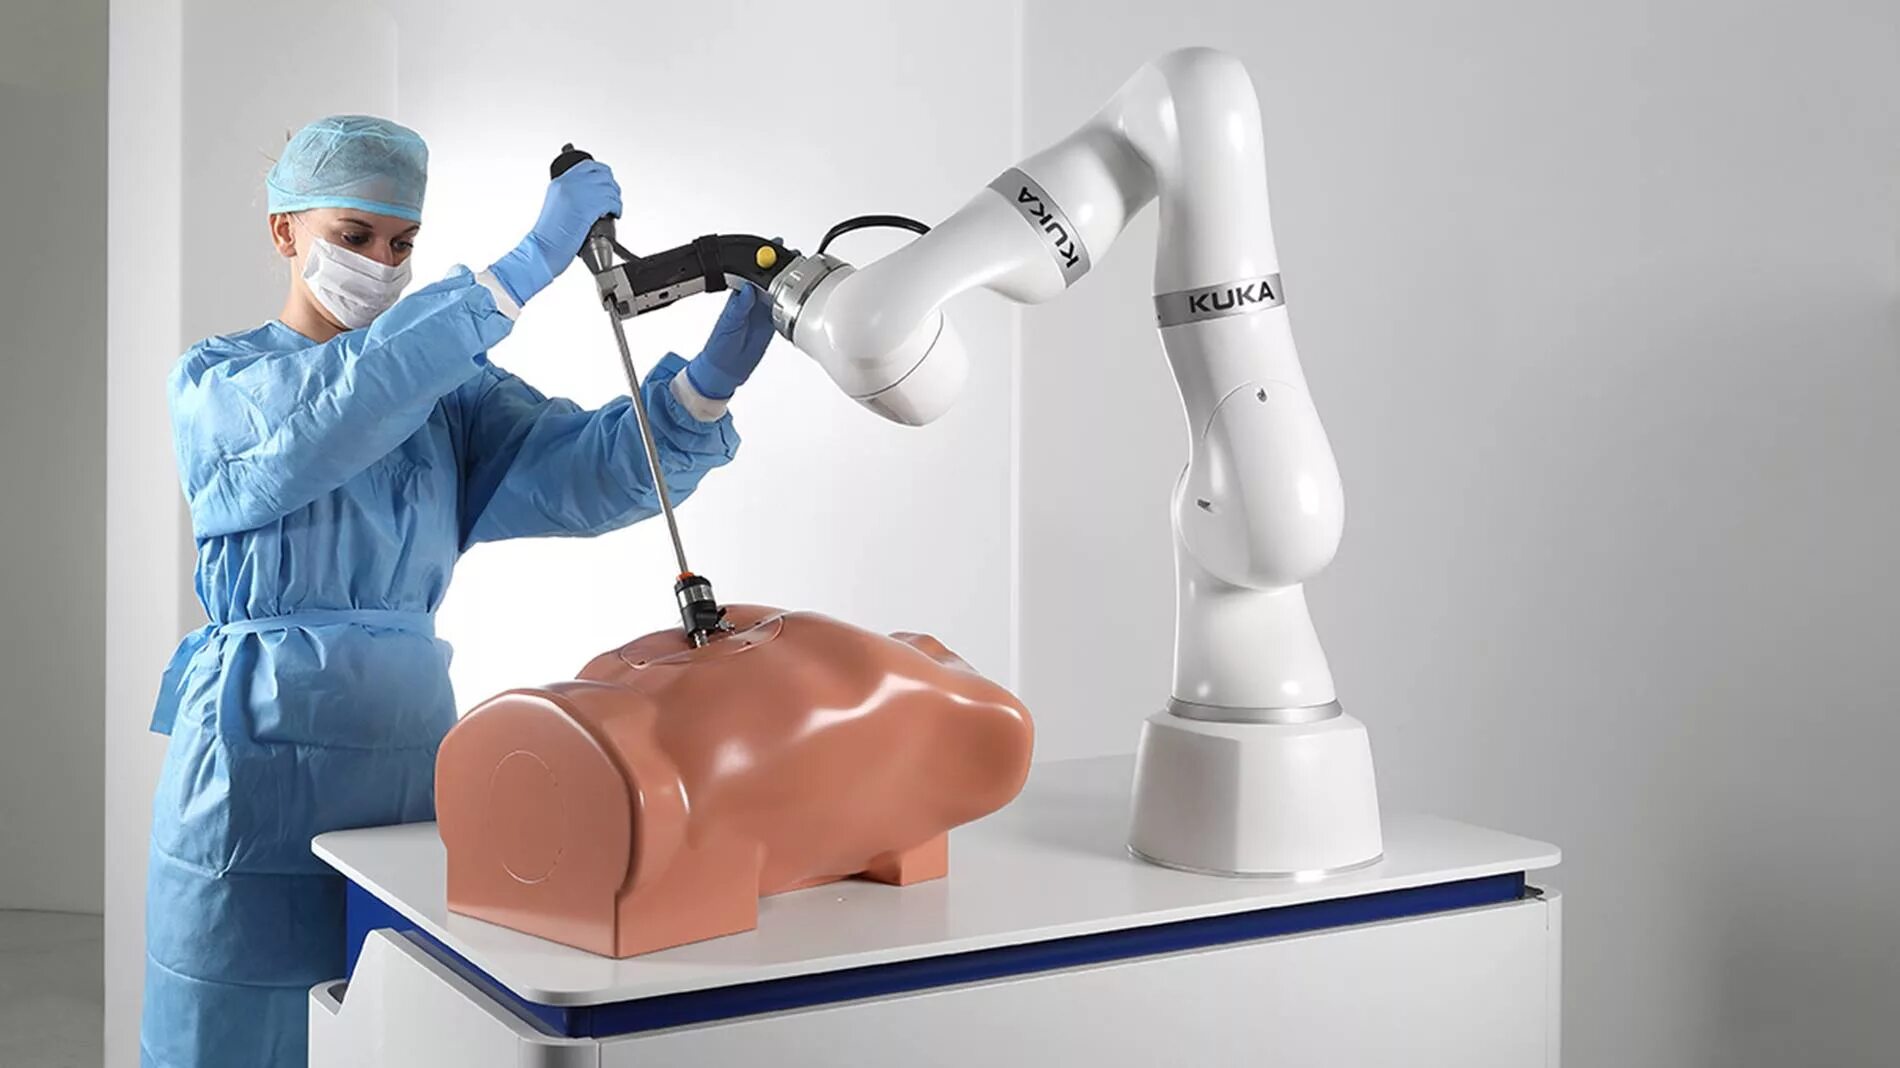 Kuka LBR med. Коллаборативные роботы Кука. Кука коллаборативные роботы для медицины. Роботизированная хирургия.